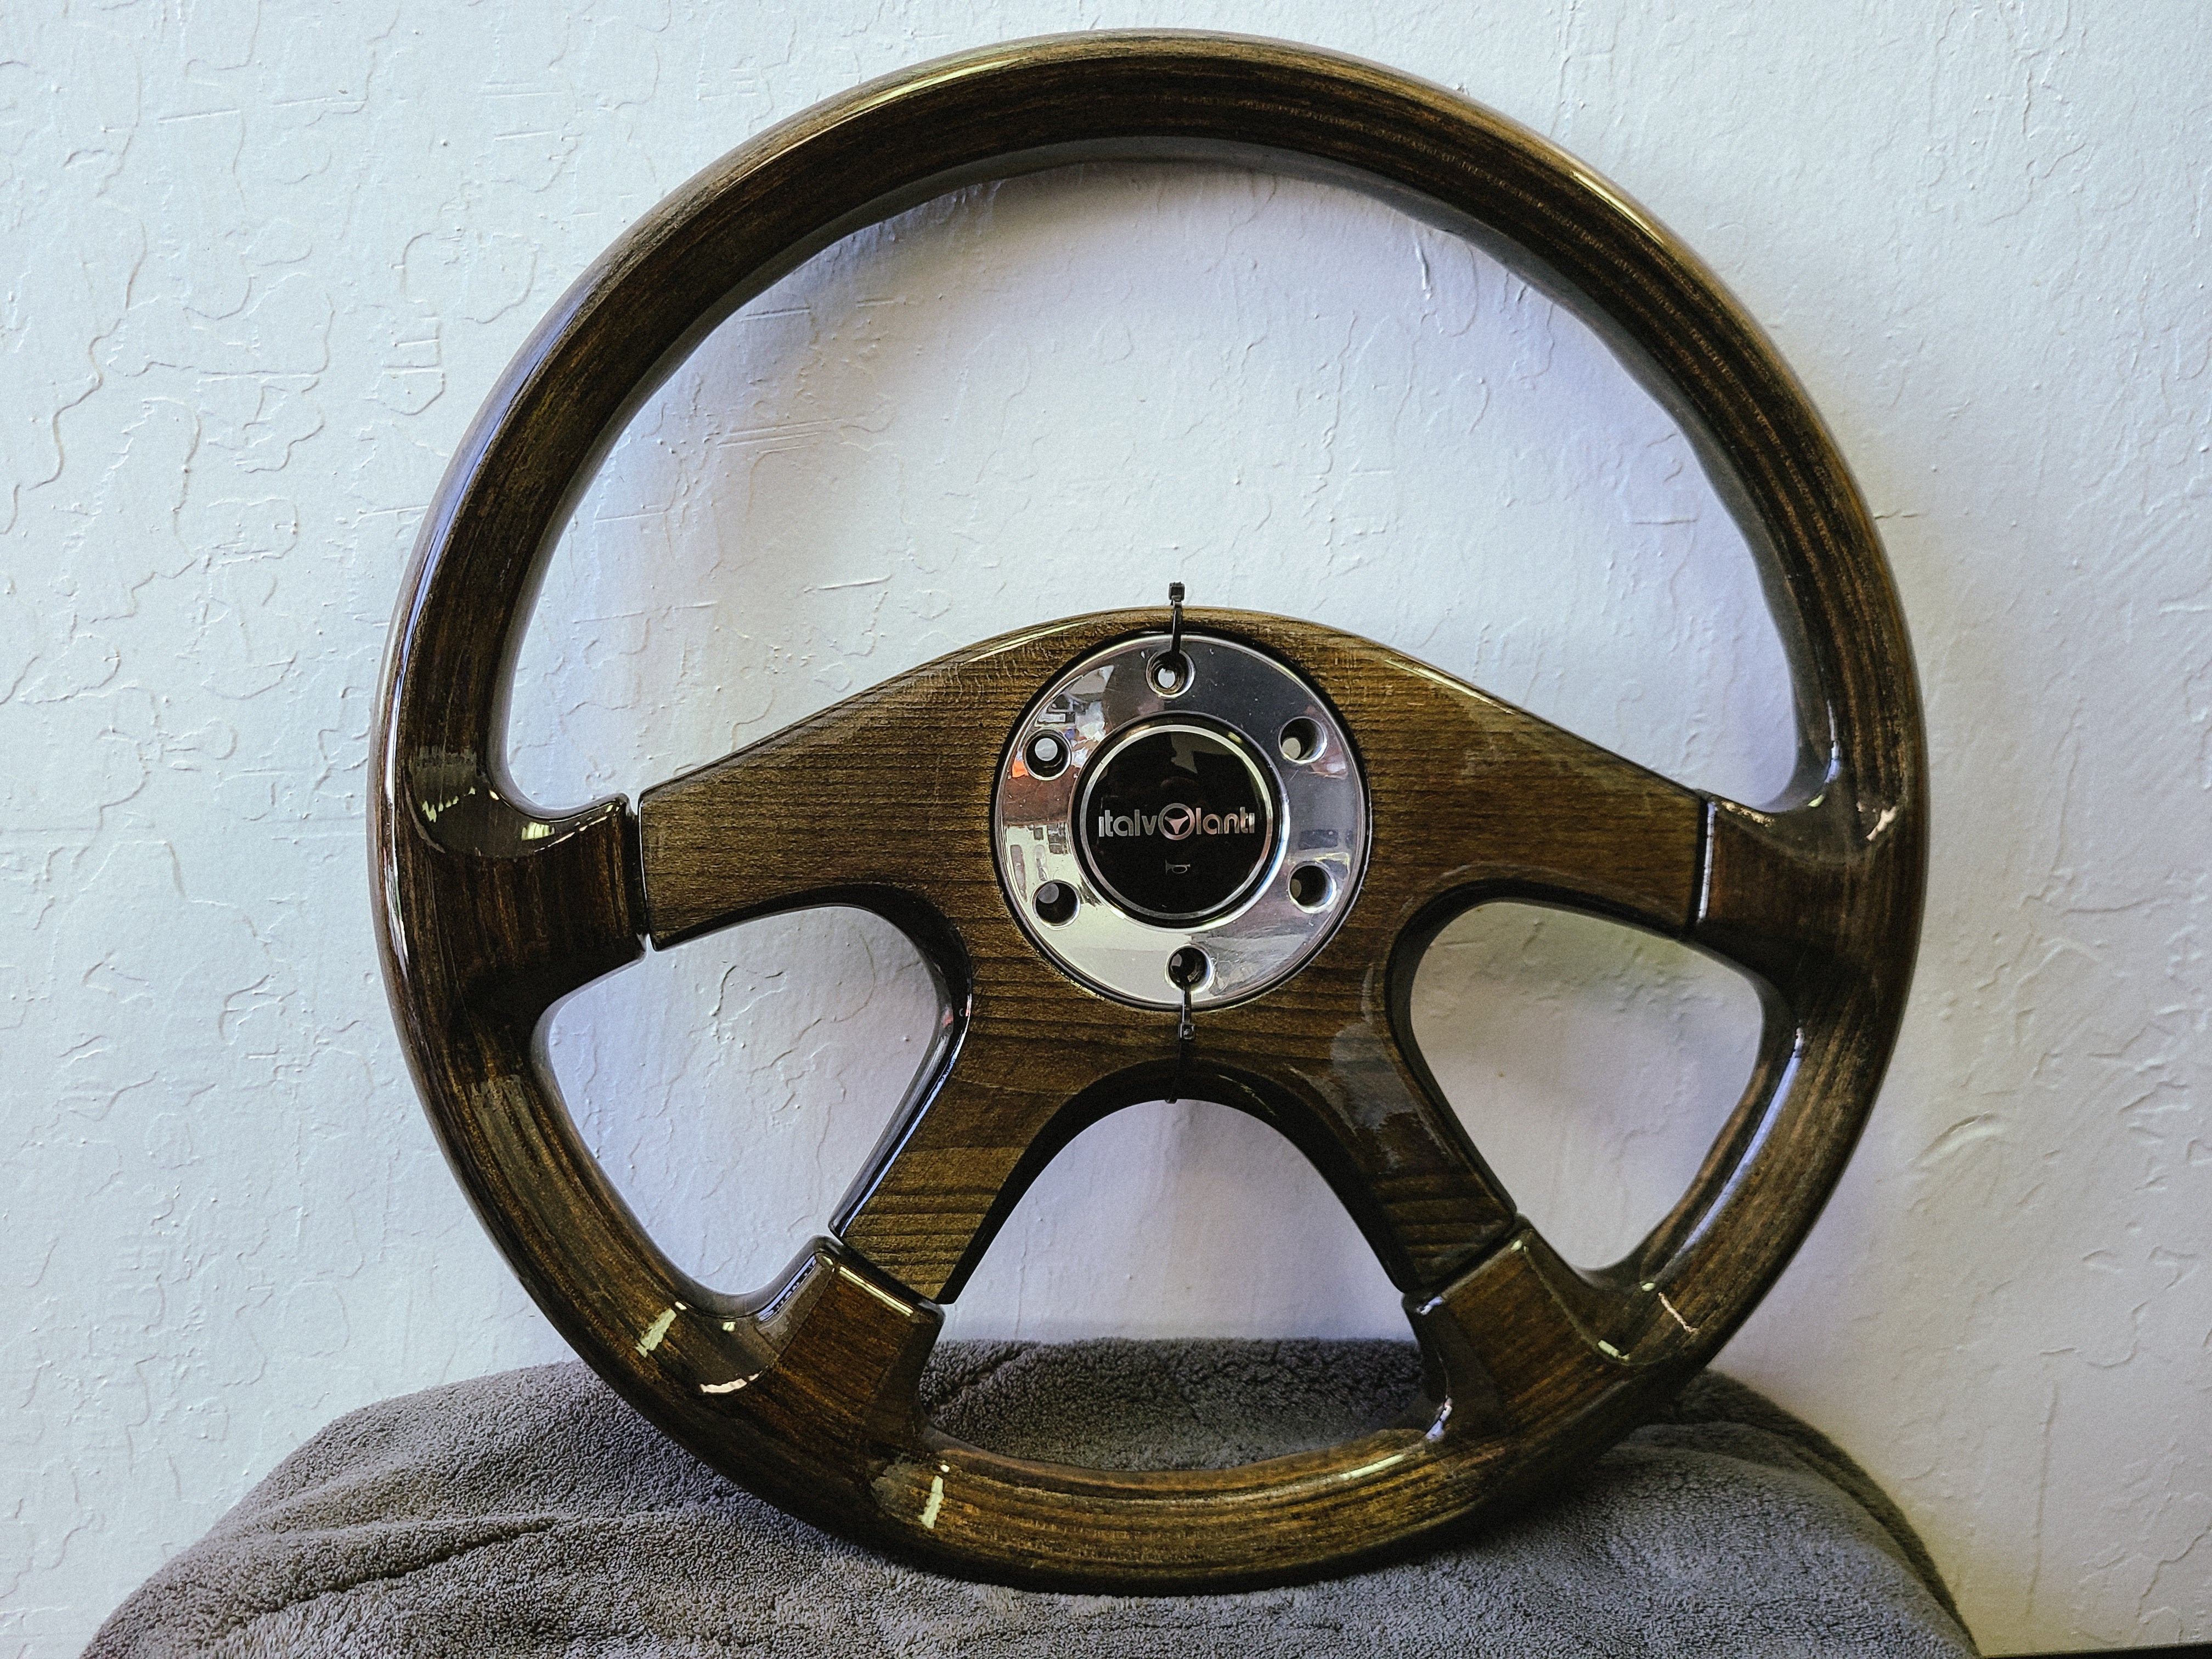 Italvolanti 4 spoke 365mm wood steering wheel – sevenspeedshop